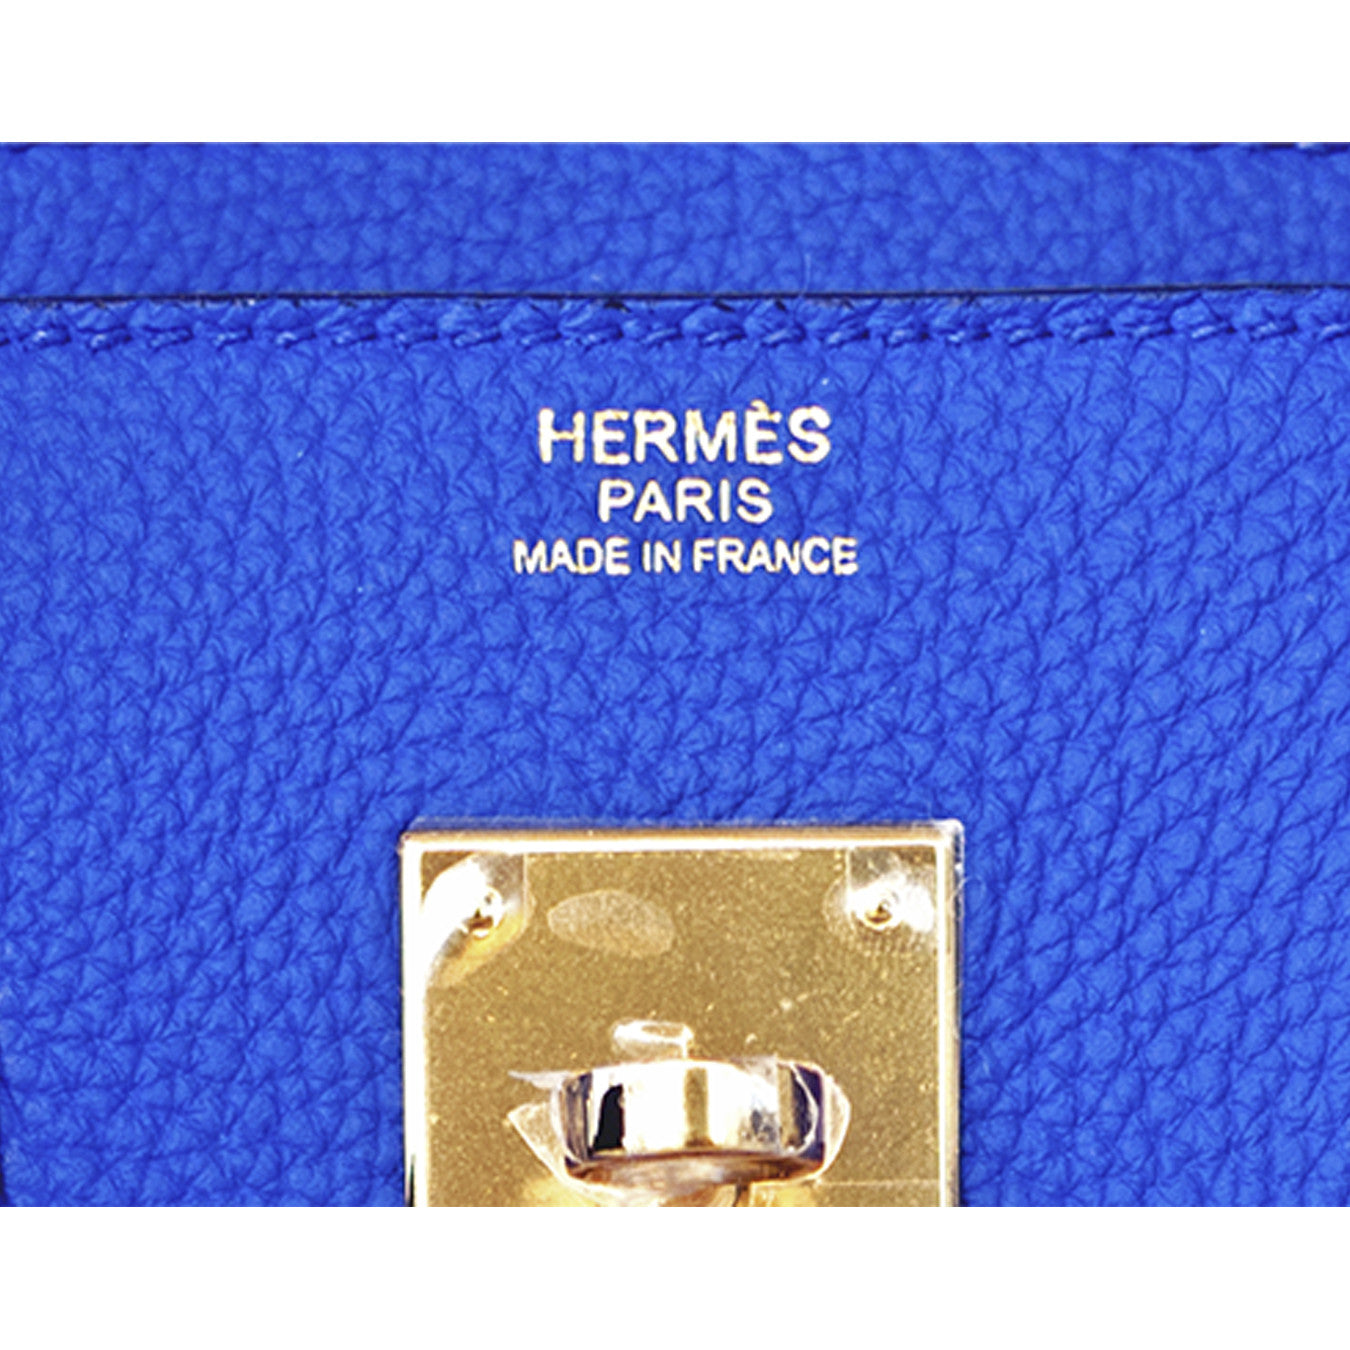 Hermes Birkin 30 togo bleu electrique ghw